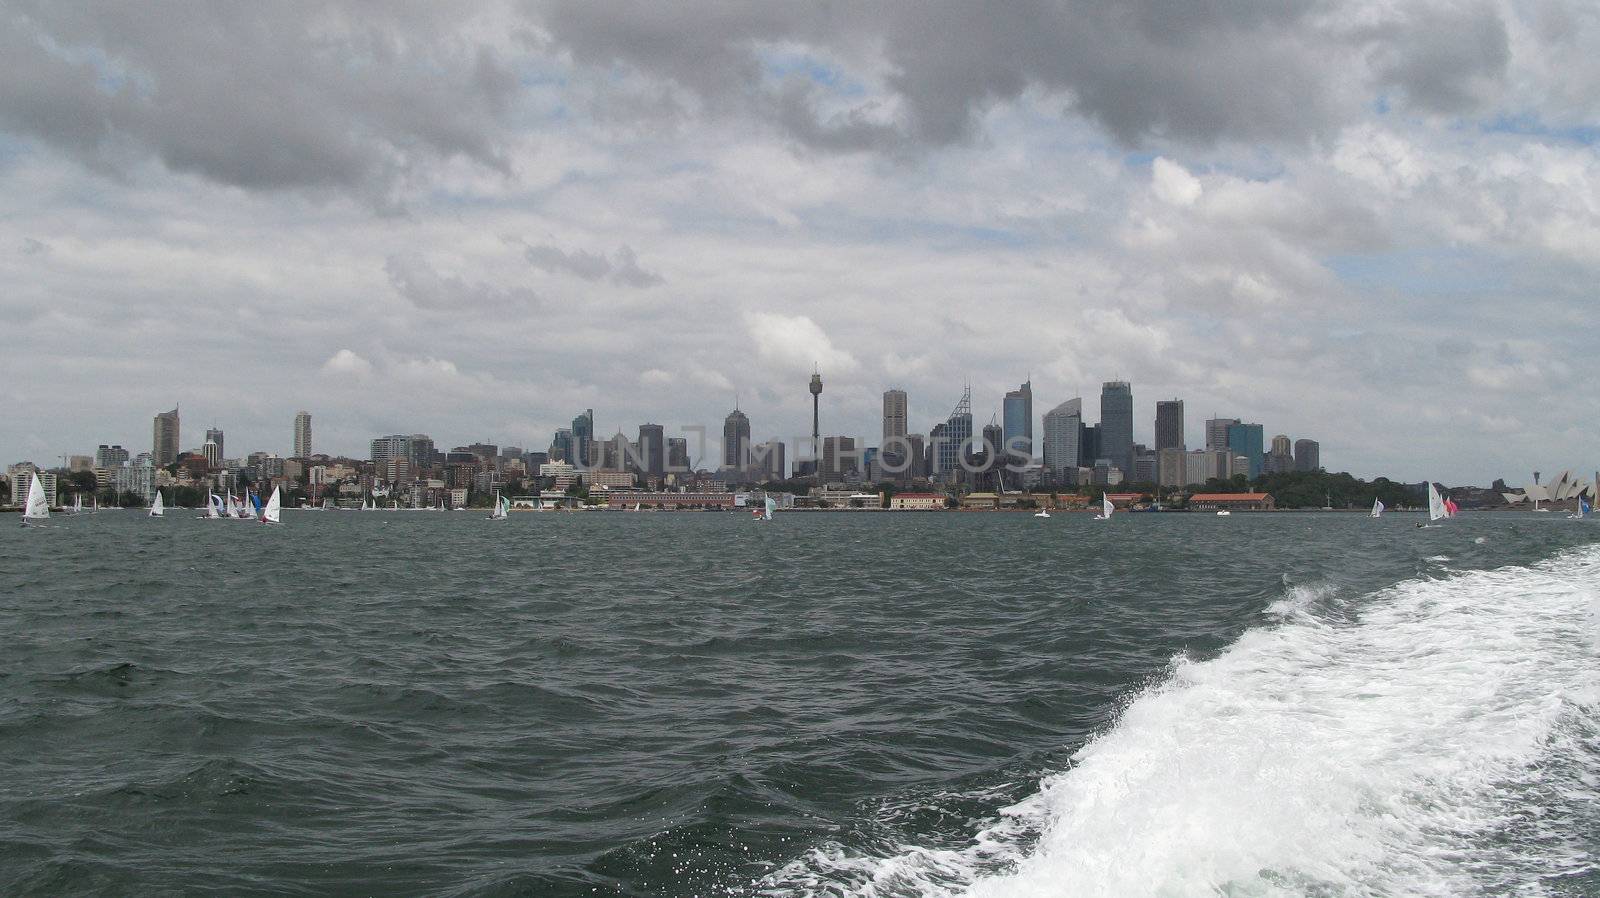 Sydney skyline by Arrxxx